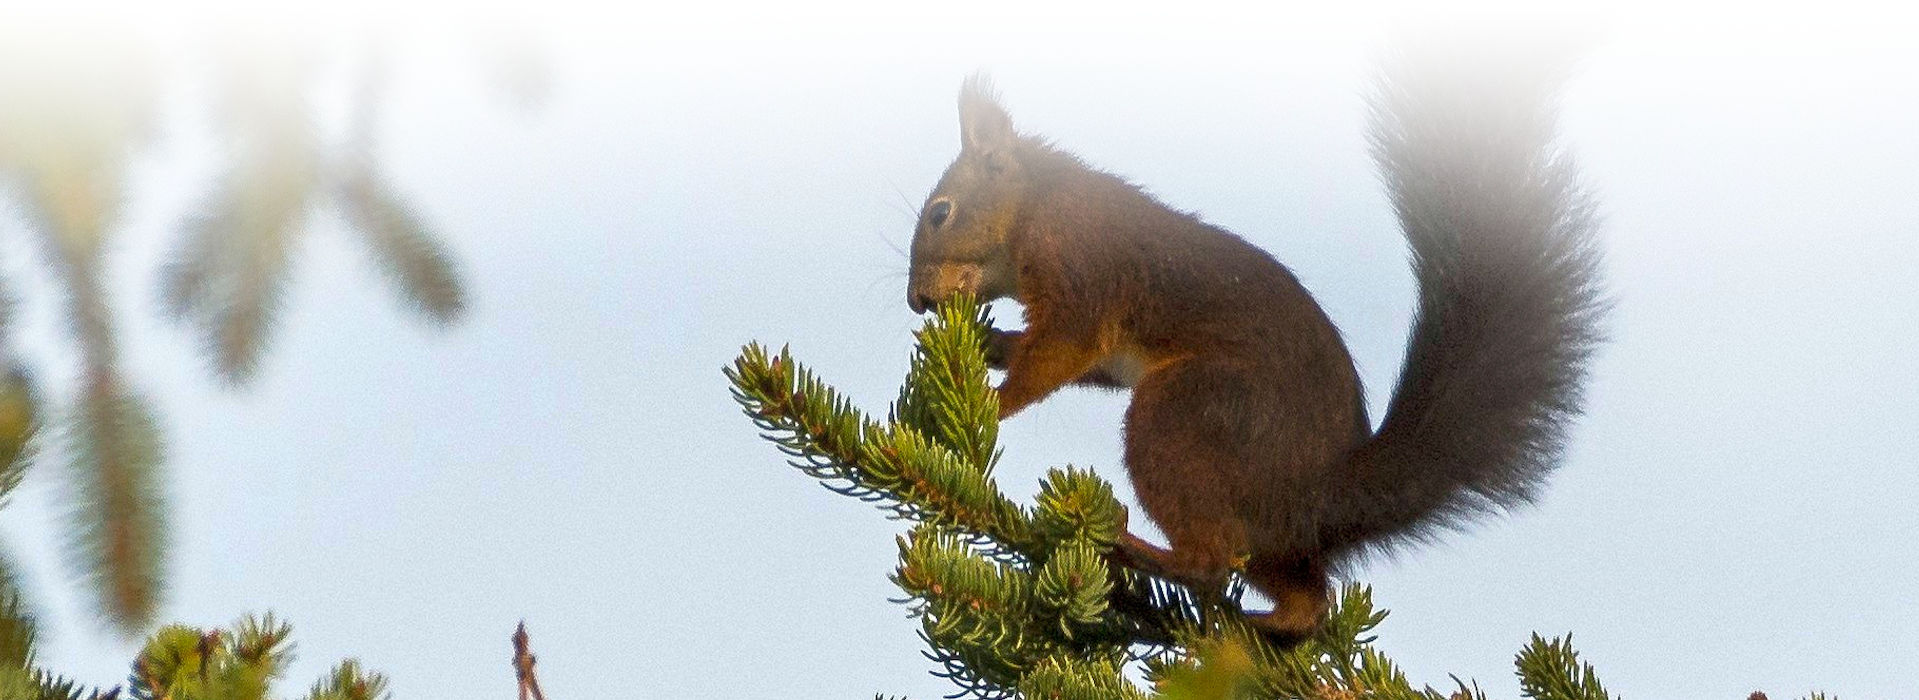 Ein rotes Eichhörnchen sitzt auf einem Nadelbaumzweig und hält einen Fichtenzapfen in den Pfoten, an dem es knabbert. Im Hintergrund blauer Himmel.